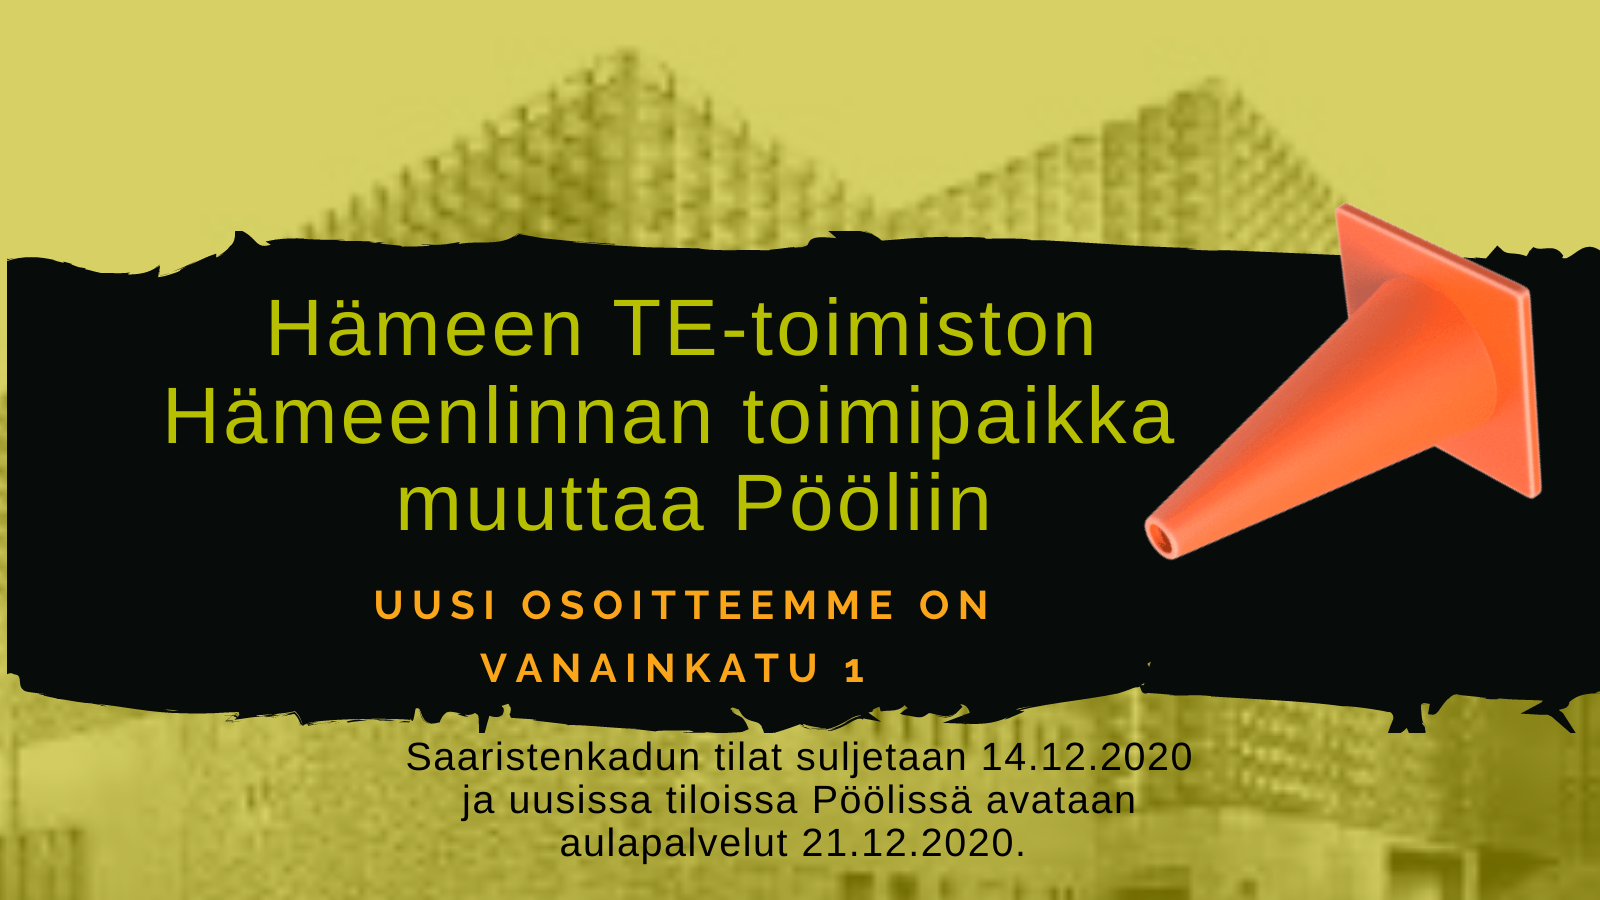 Hämeenlinnan toimipaikka muuttaa Vanainkatu 1 21.12.2020